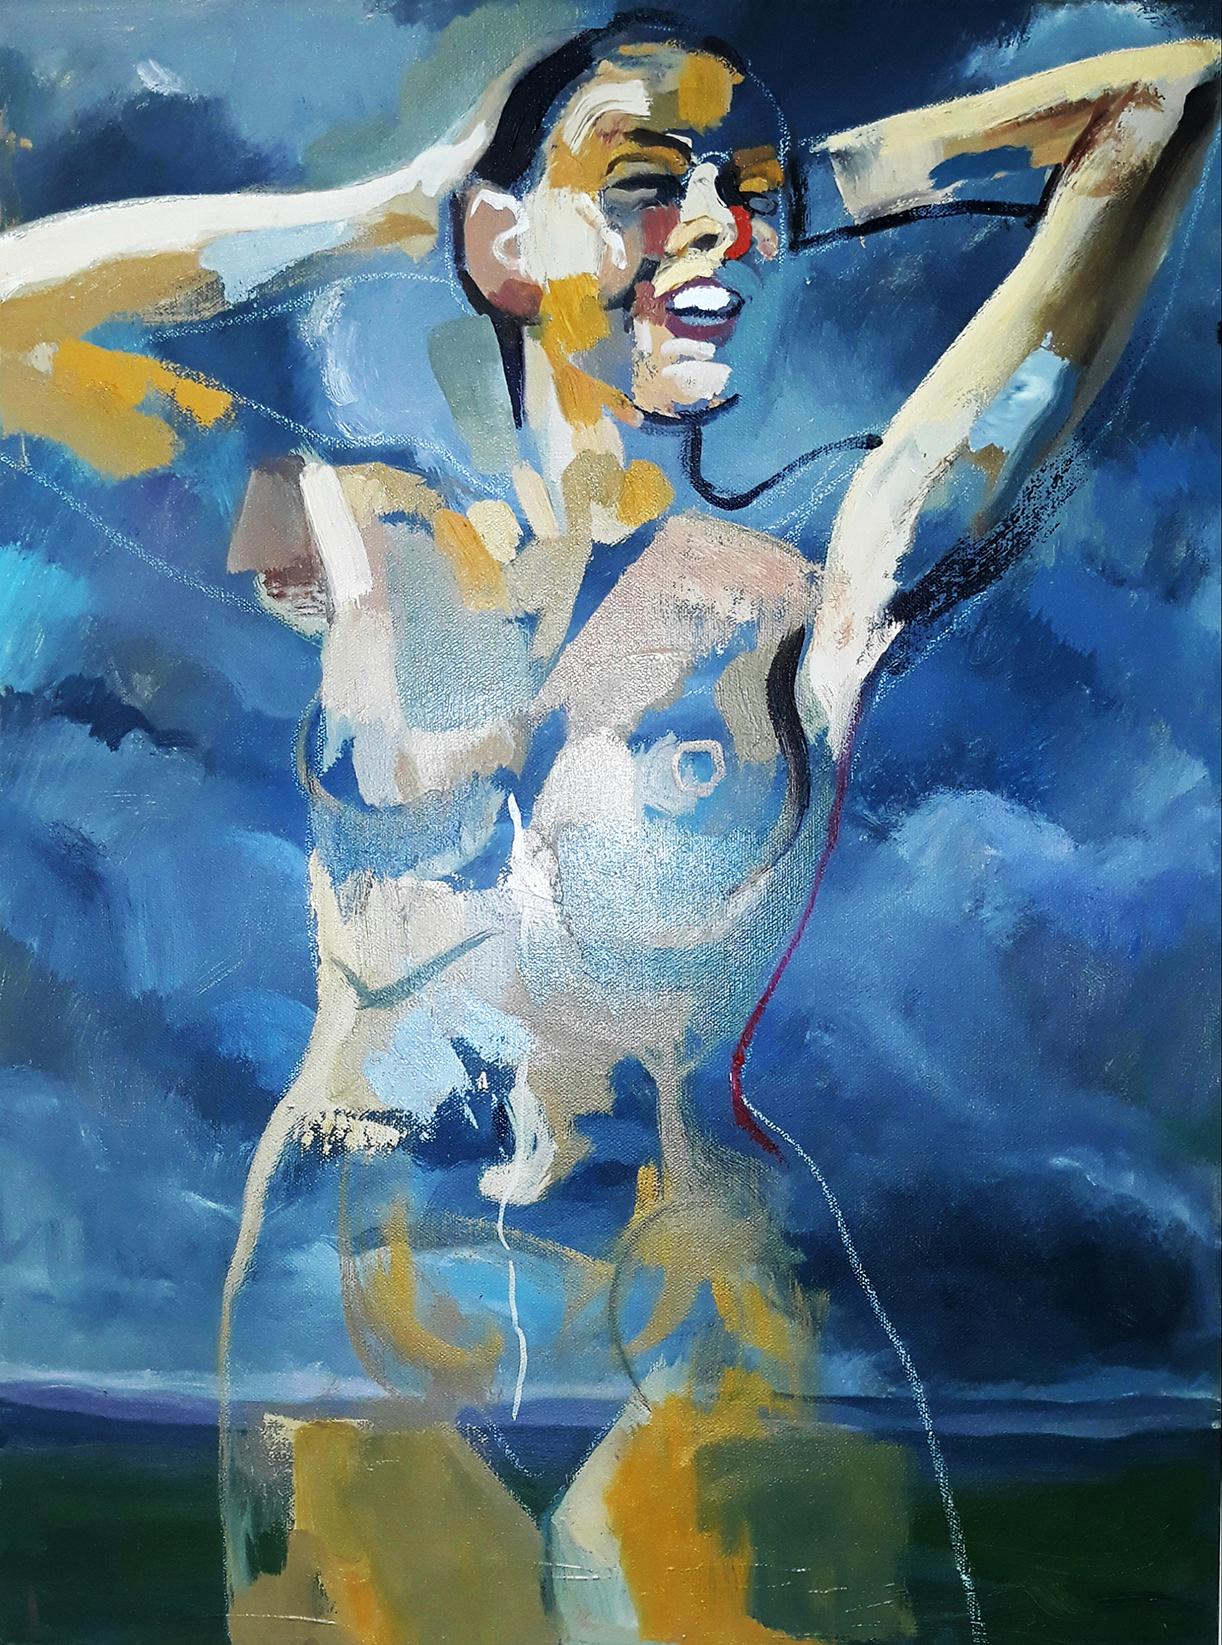 Tom Bennett Figurative Painting – Spoke 1, nackt, blaue Töne, Anspielung auf Himmelswasser